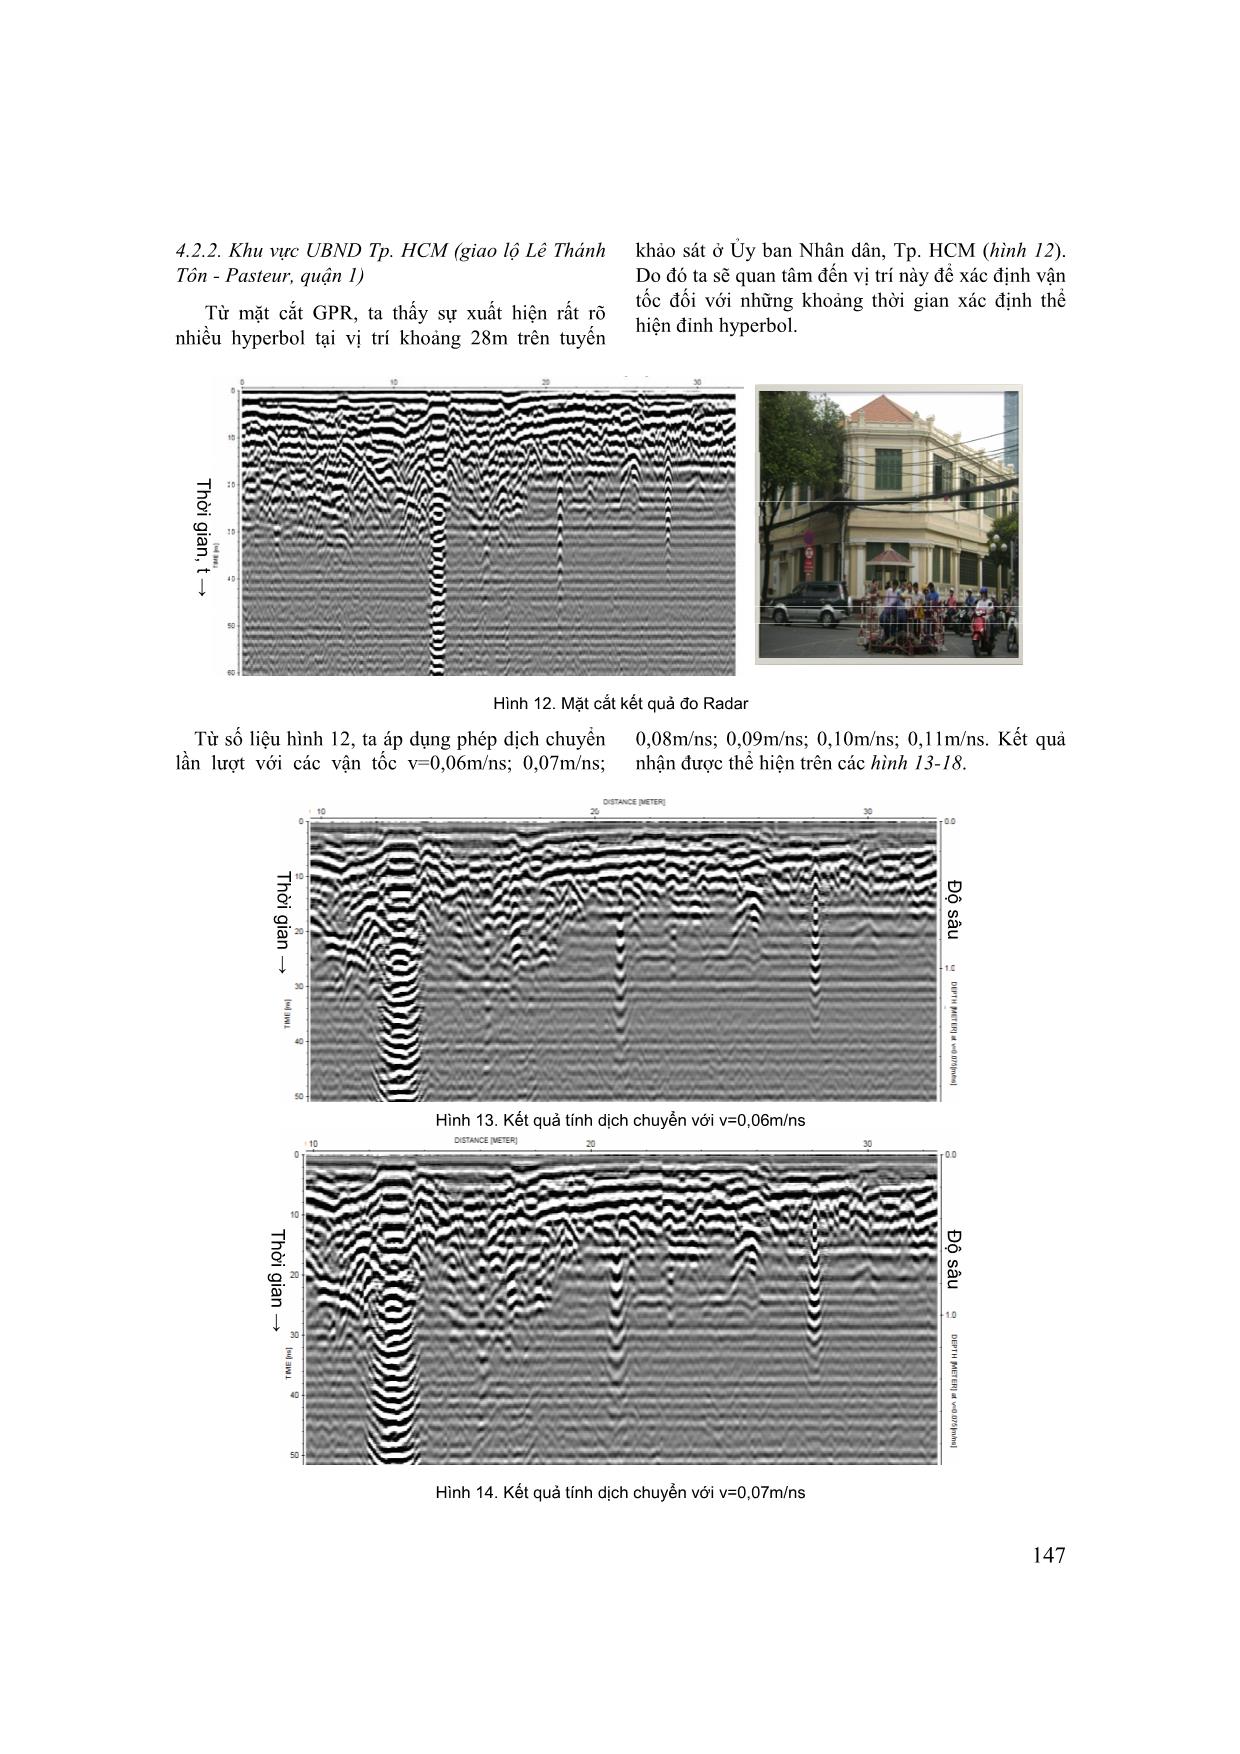 Nghiên cứu dịch chuyển kirchhoff để xác định mô hình vận tốc trong phương pháp điện từ tần số cao trang 6